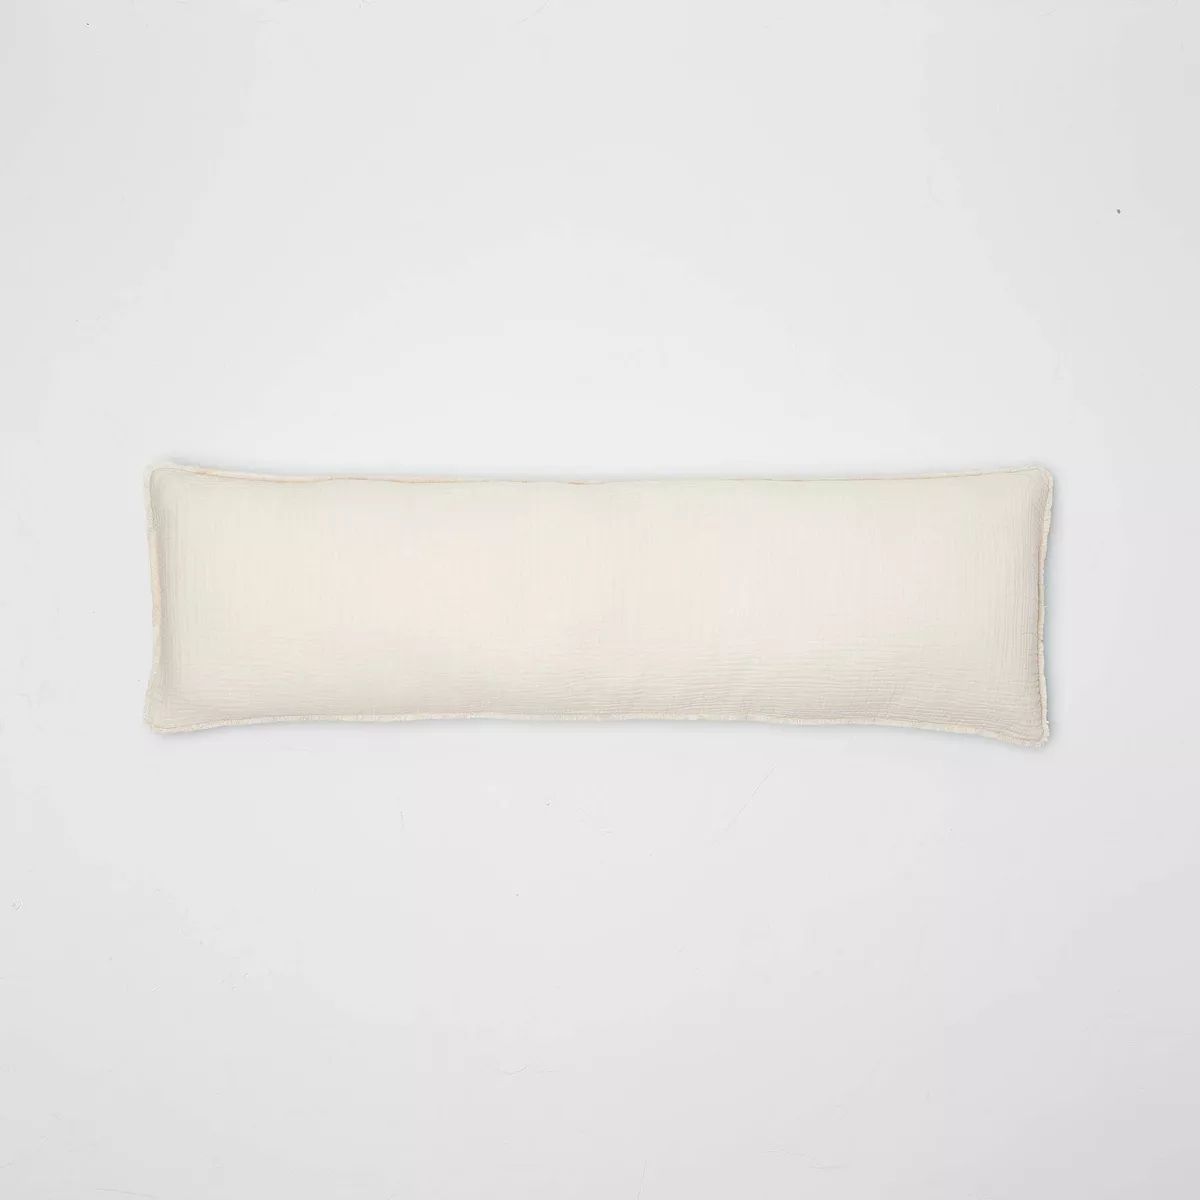 Lumbar Textured Chambray Cotton Bed Decorative Throw Pillow  - Casaluna™ | Target